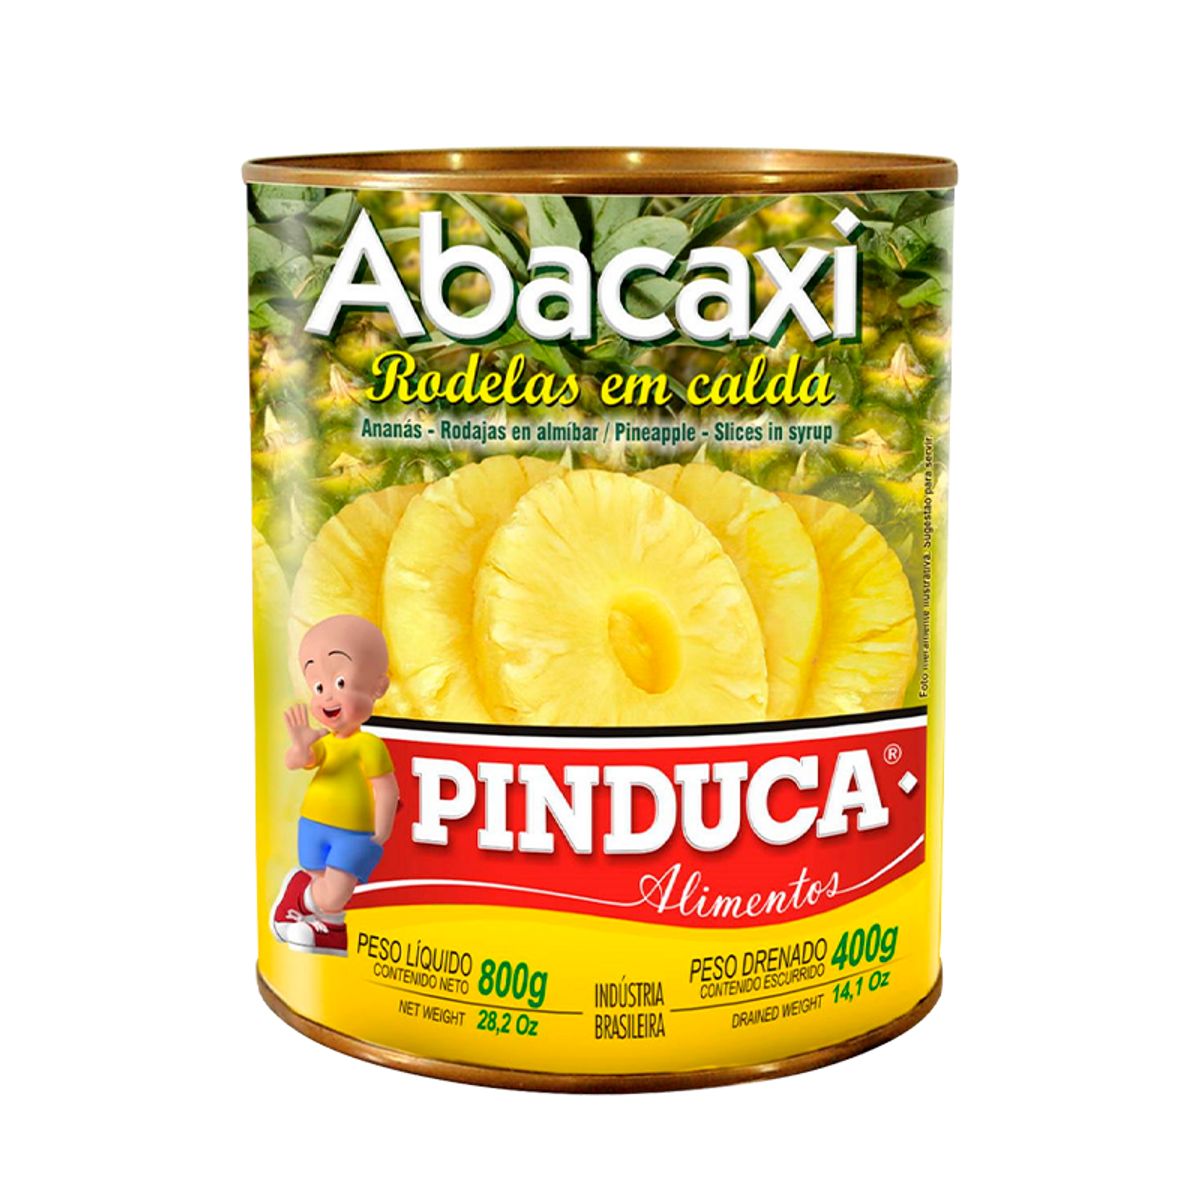 Abacaxi Pinduca Rodelas em Calda Lata 400g